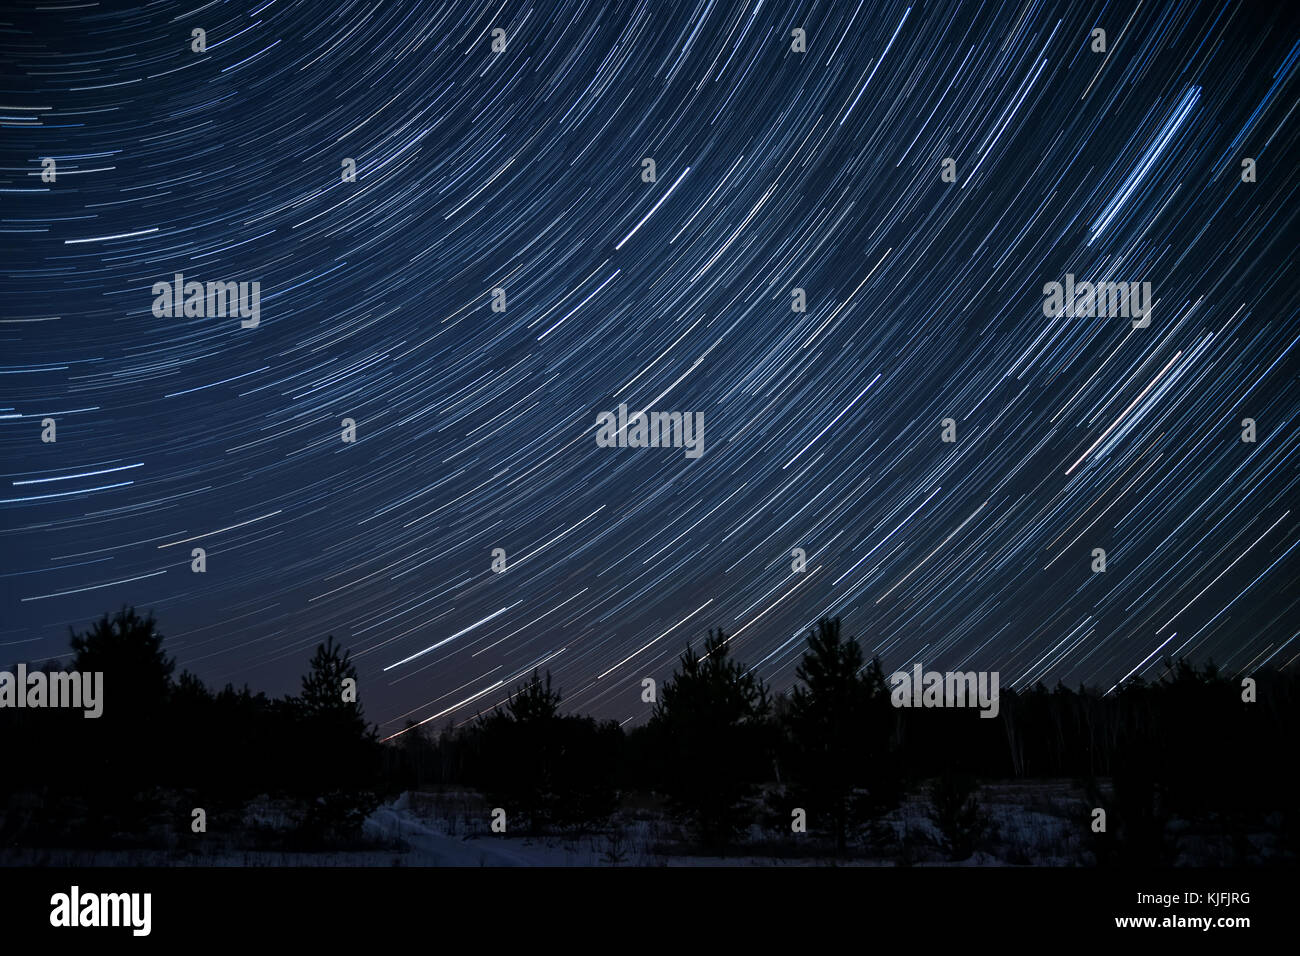 Nacht Landschaft mit Spuren von den Sternen am Nachthimmel auf dem Hintergrund eines dunklen Wald Stockfoto